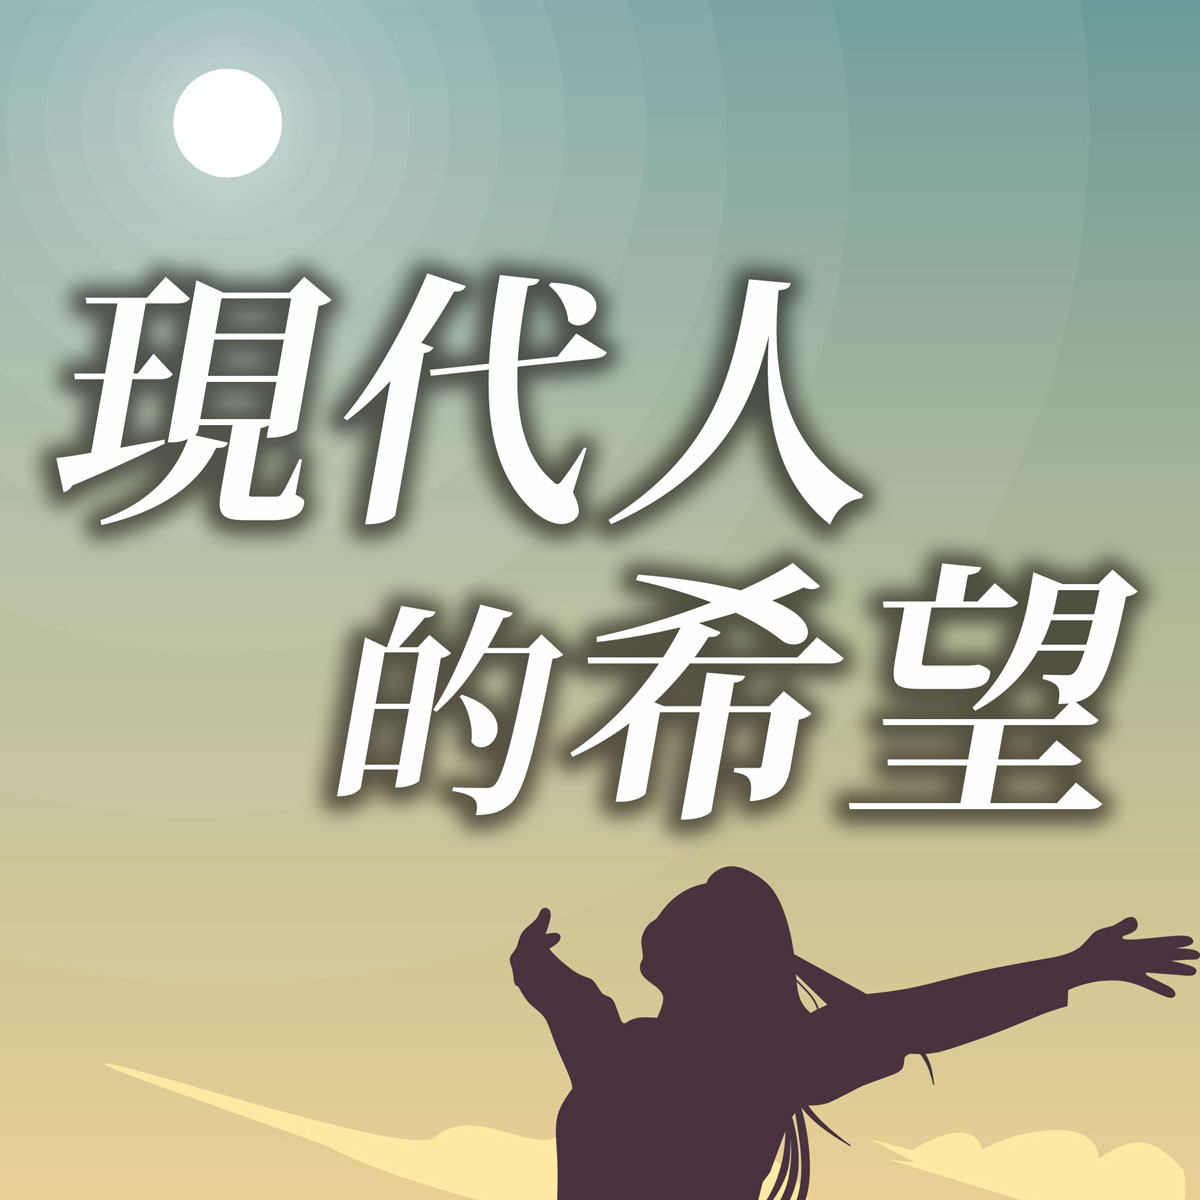 現代人的希望 - 江傳道系列(二)富足的人生-方向封面圖